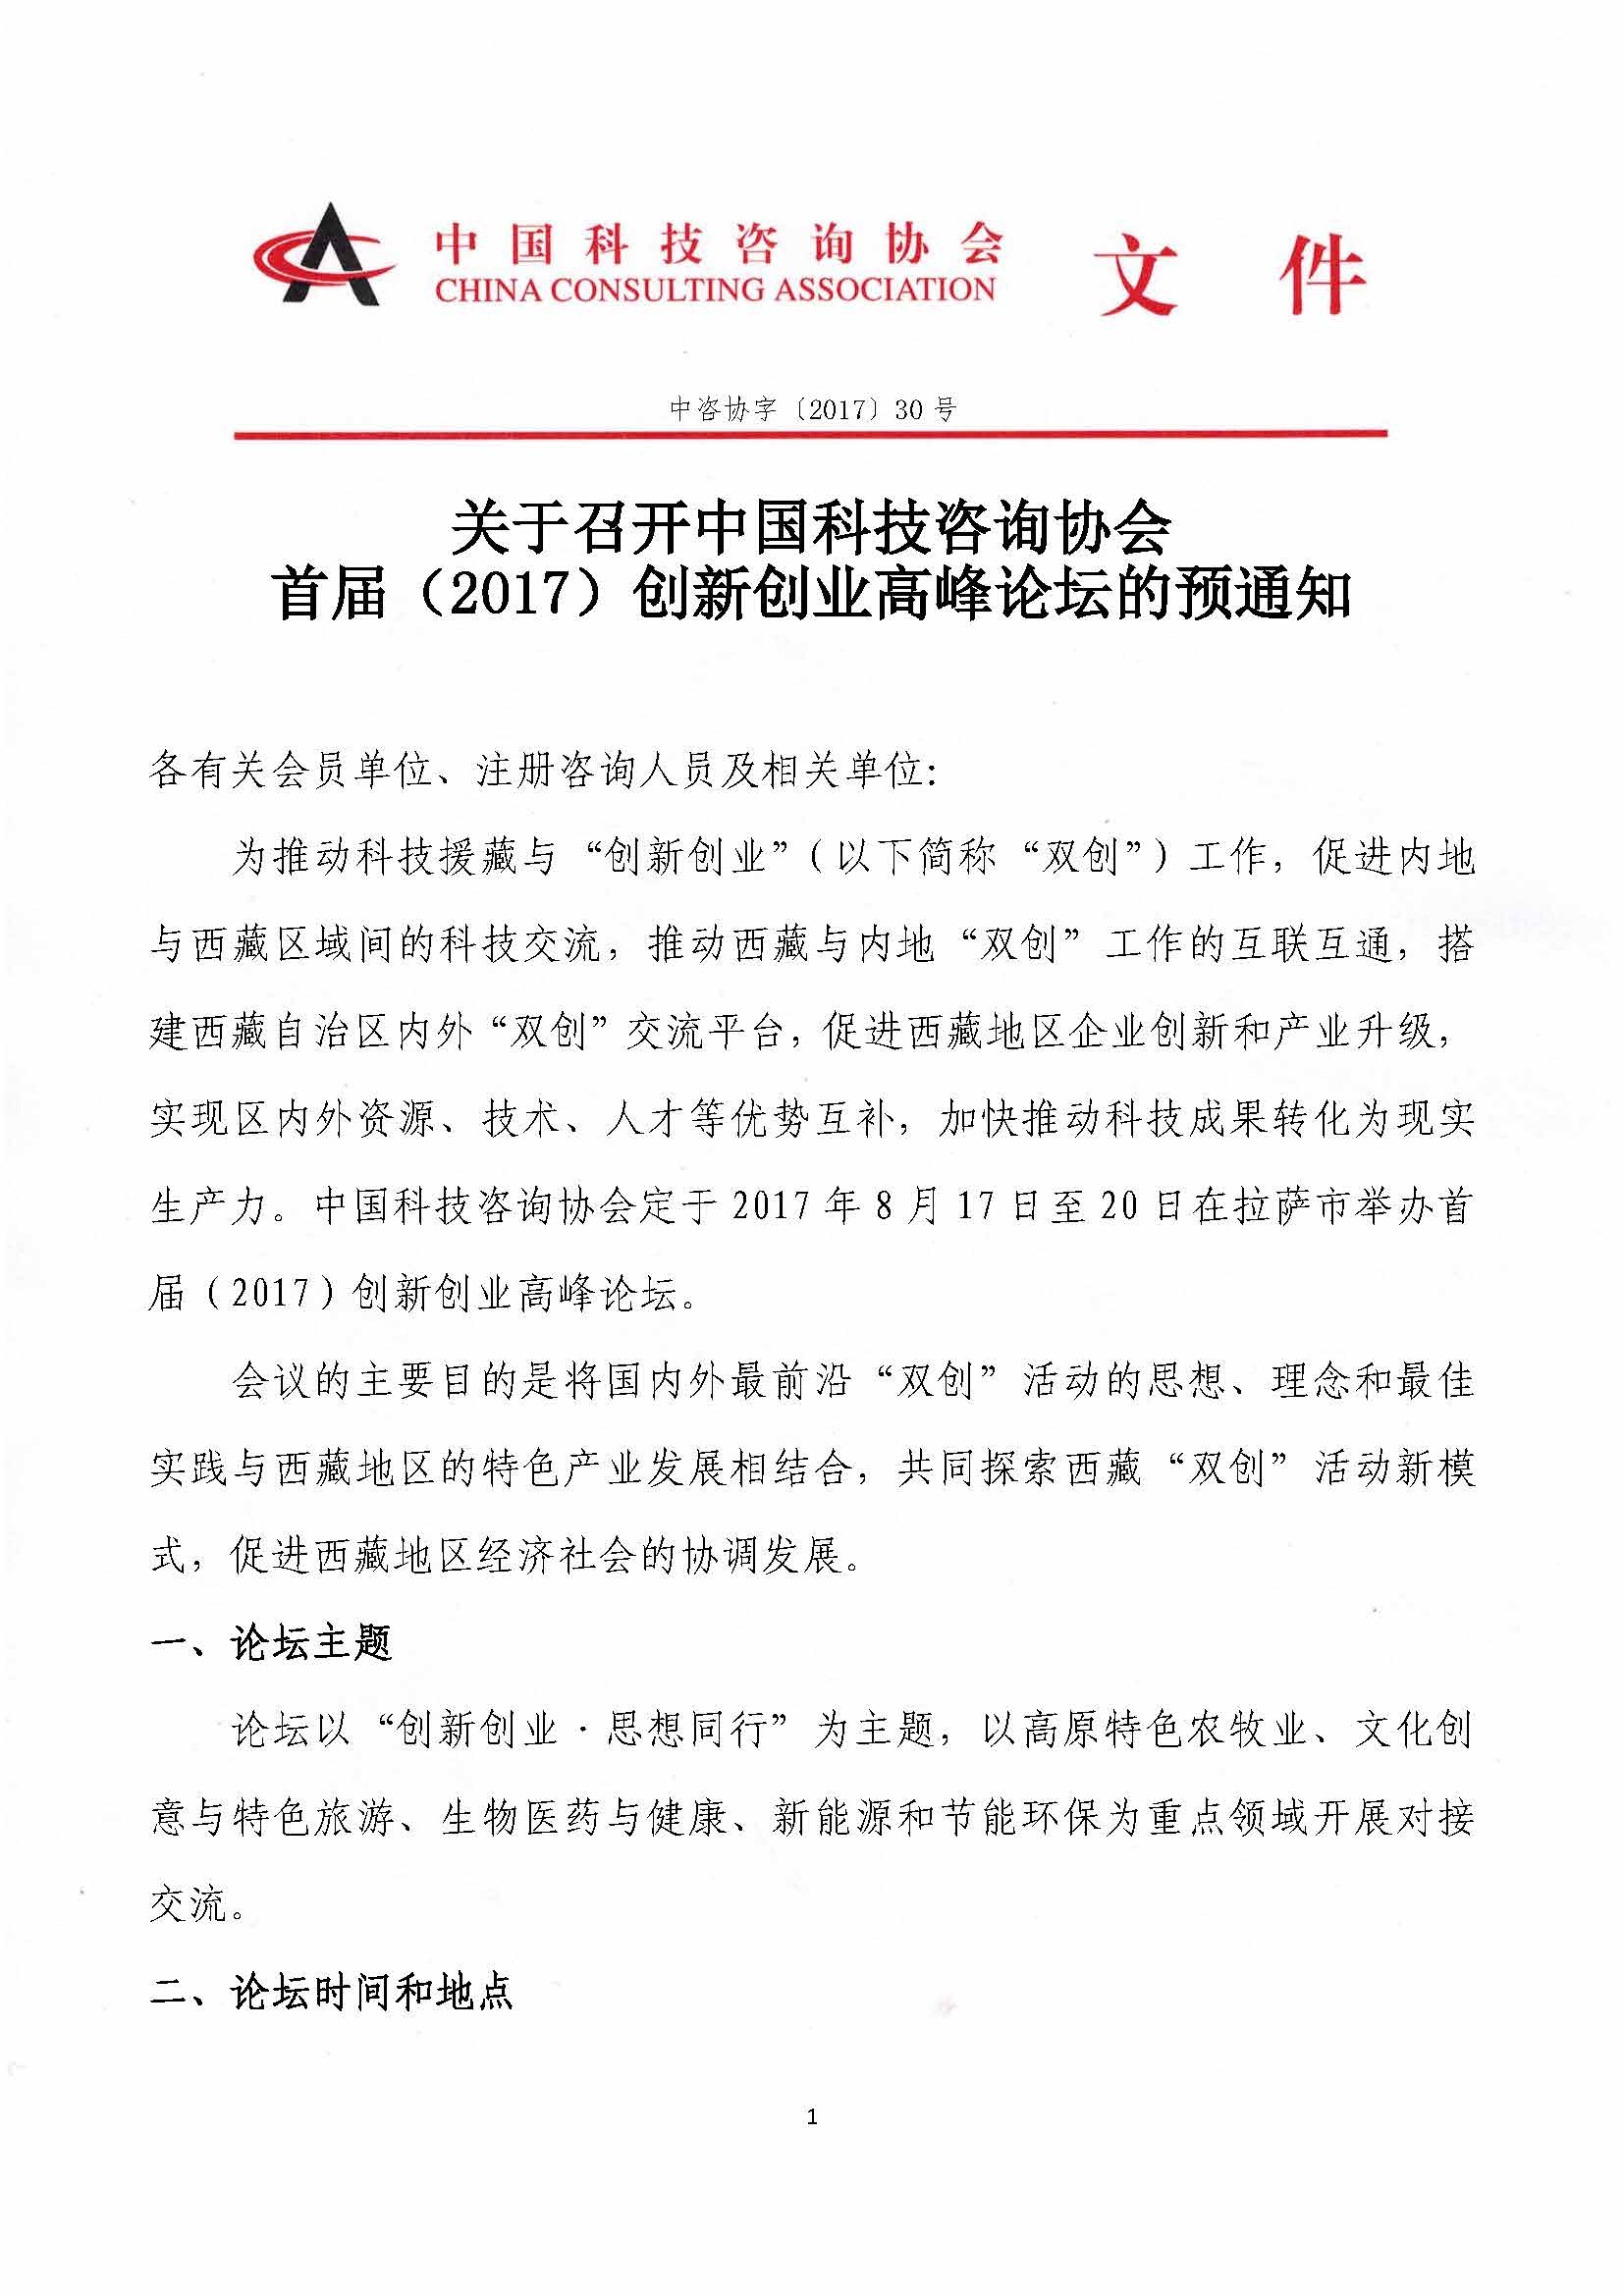 关于召开中国科技咨询协会首届（2017）创新创业高峰论坛的预通知_页面_1.jpg